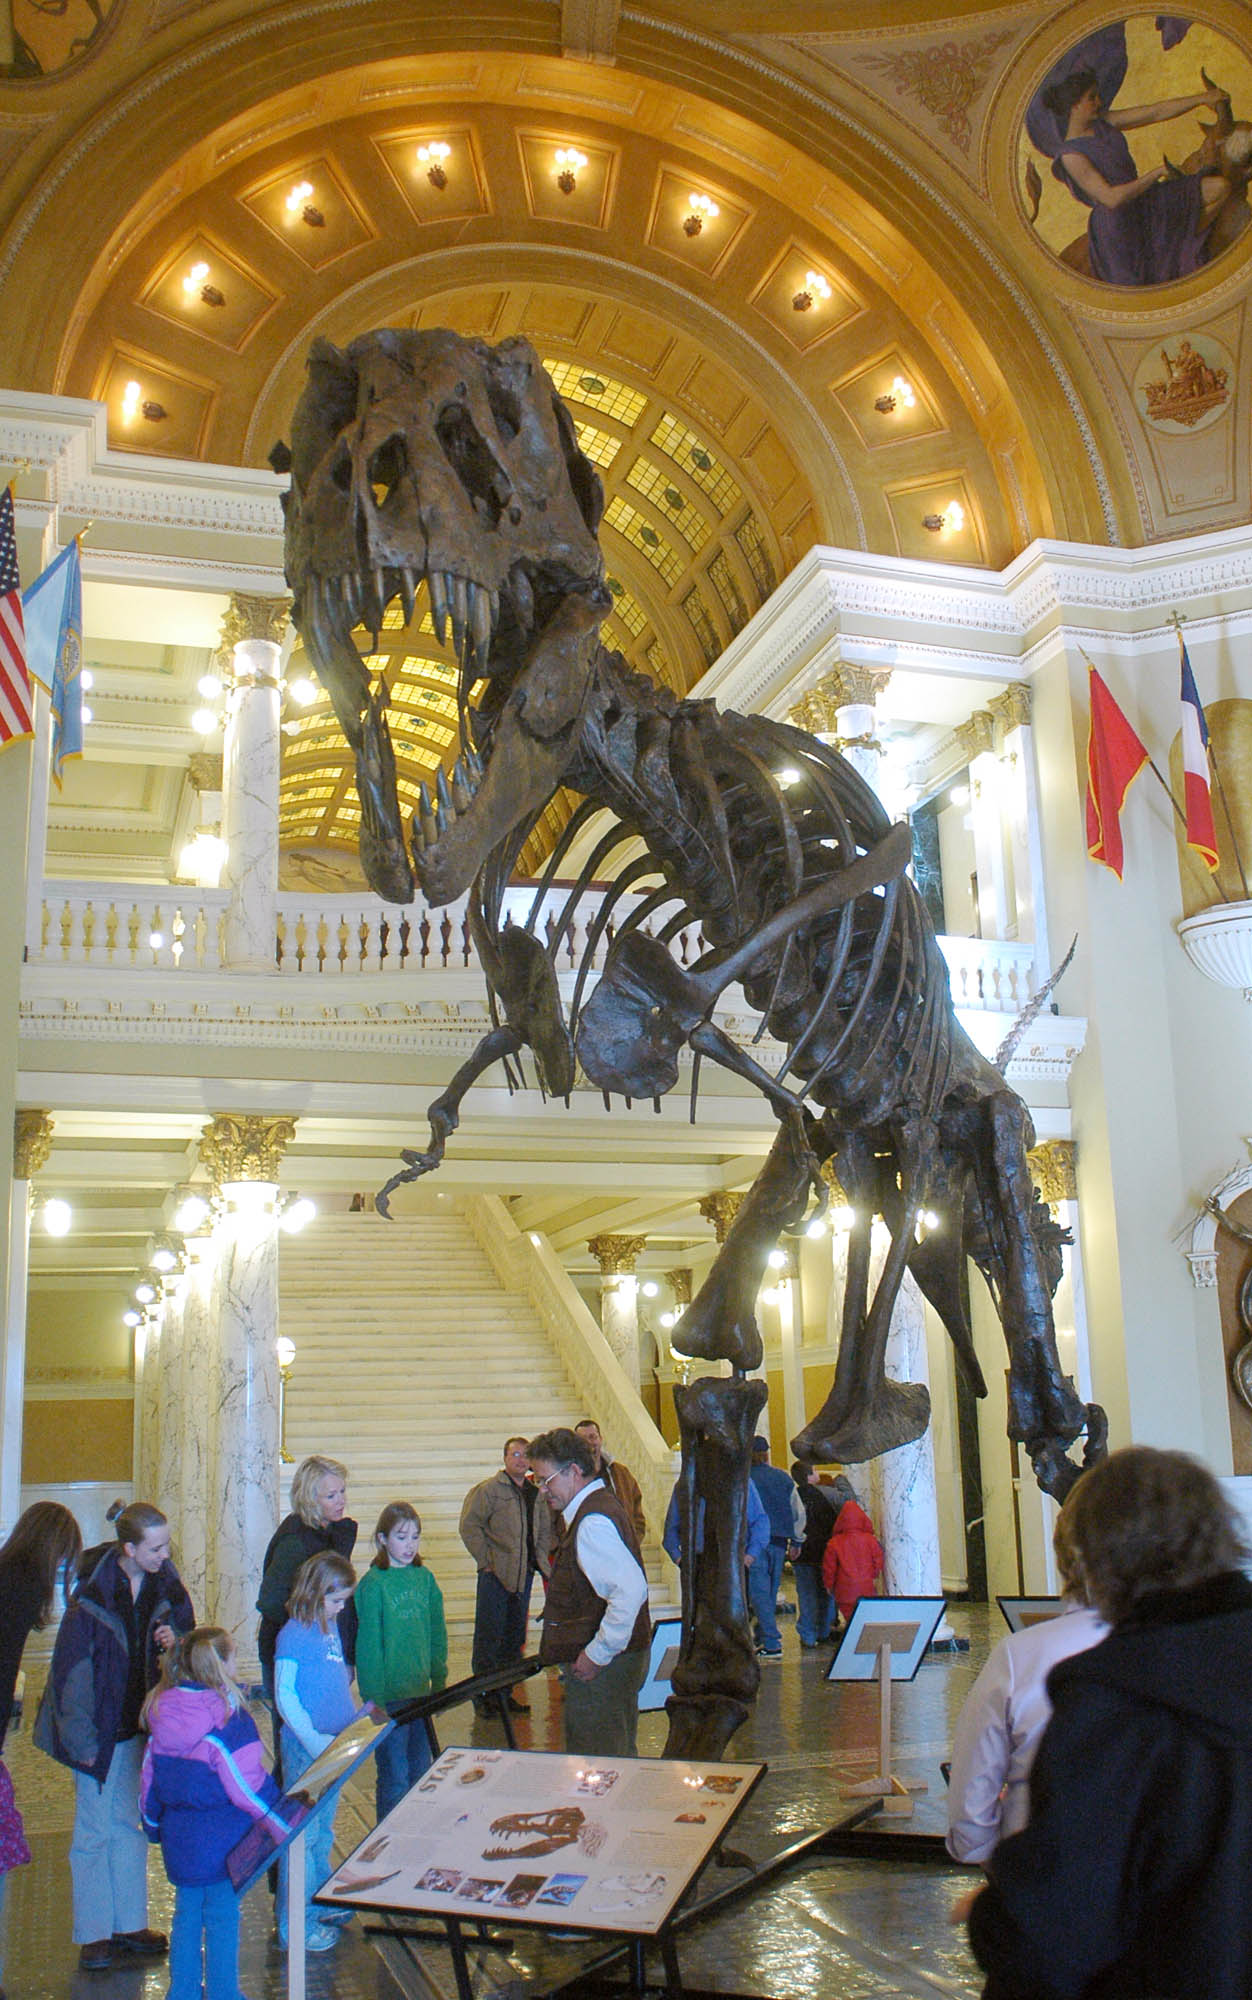 Crânio de T. Rex é leiloado por US$ 6,1 milhões - 11/12/2022